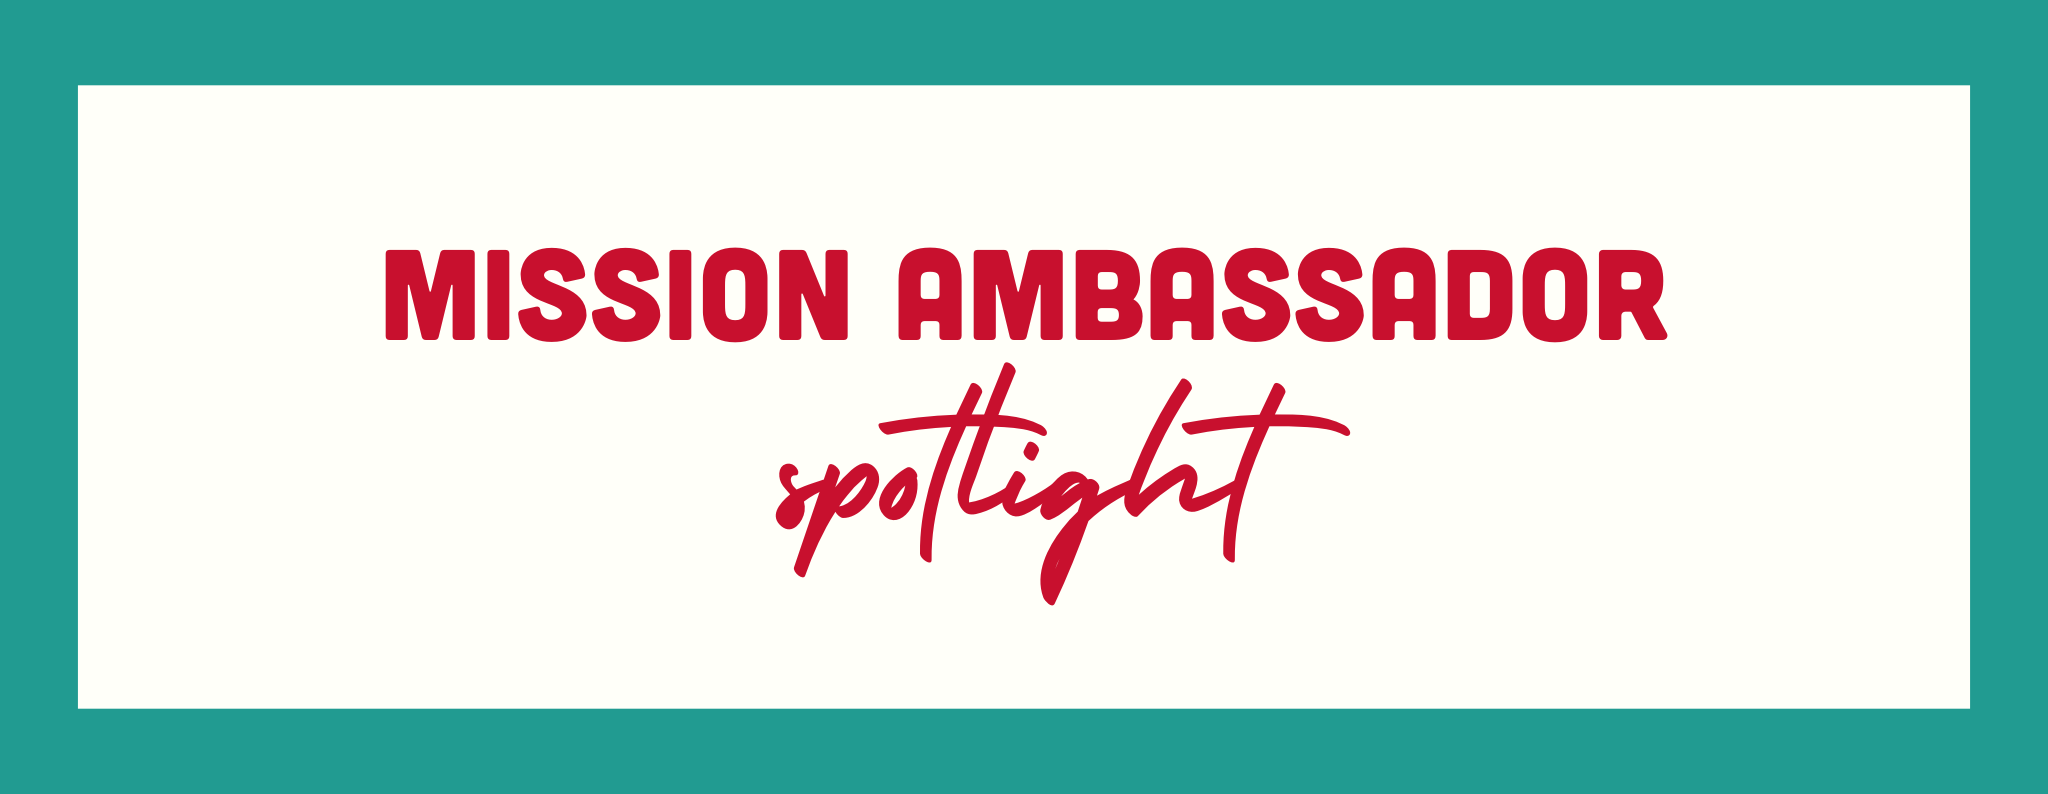 Mission Ambassador Spotlight